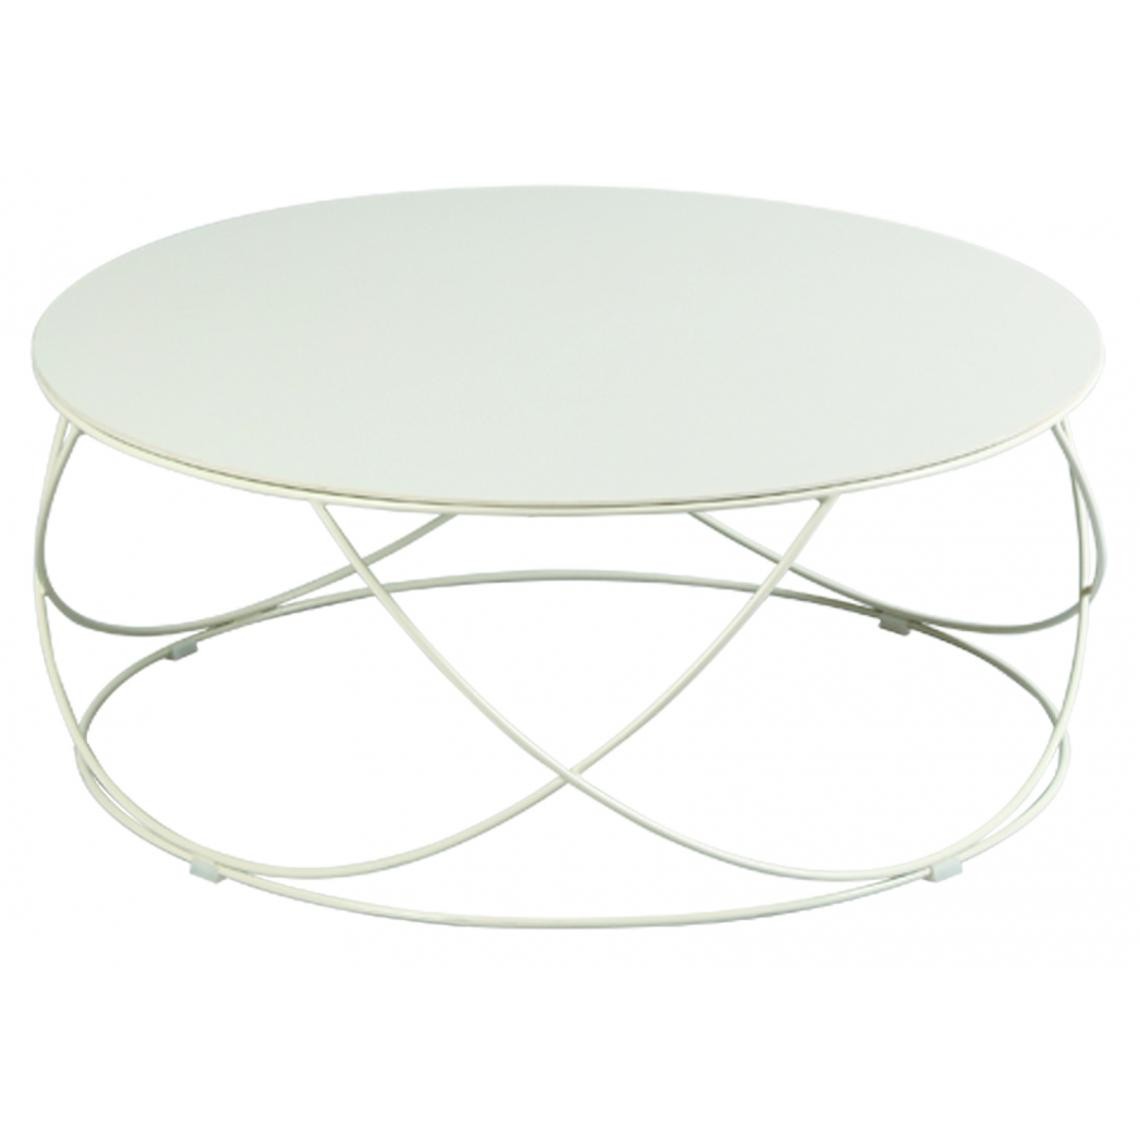 Pegane - Table basse design en céramique couleur champagne (démontée) - Dim : Diam 85 x Ht 36 cm - Tables basses